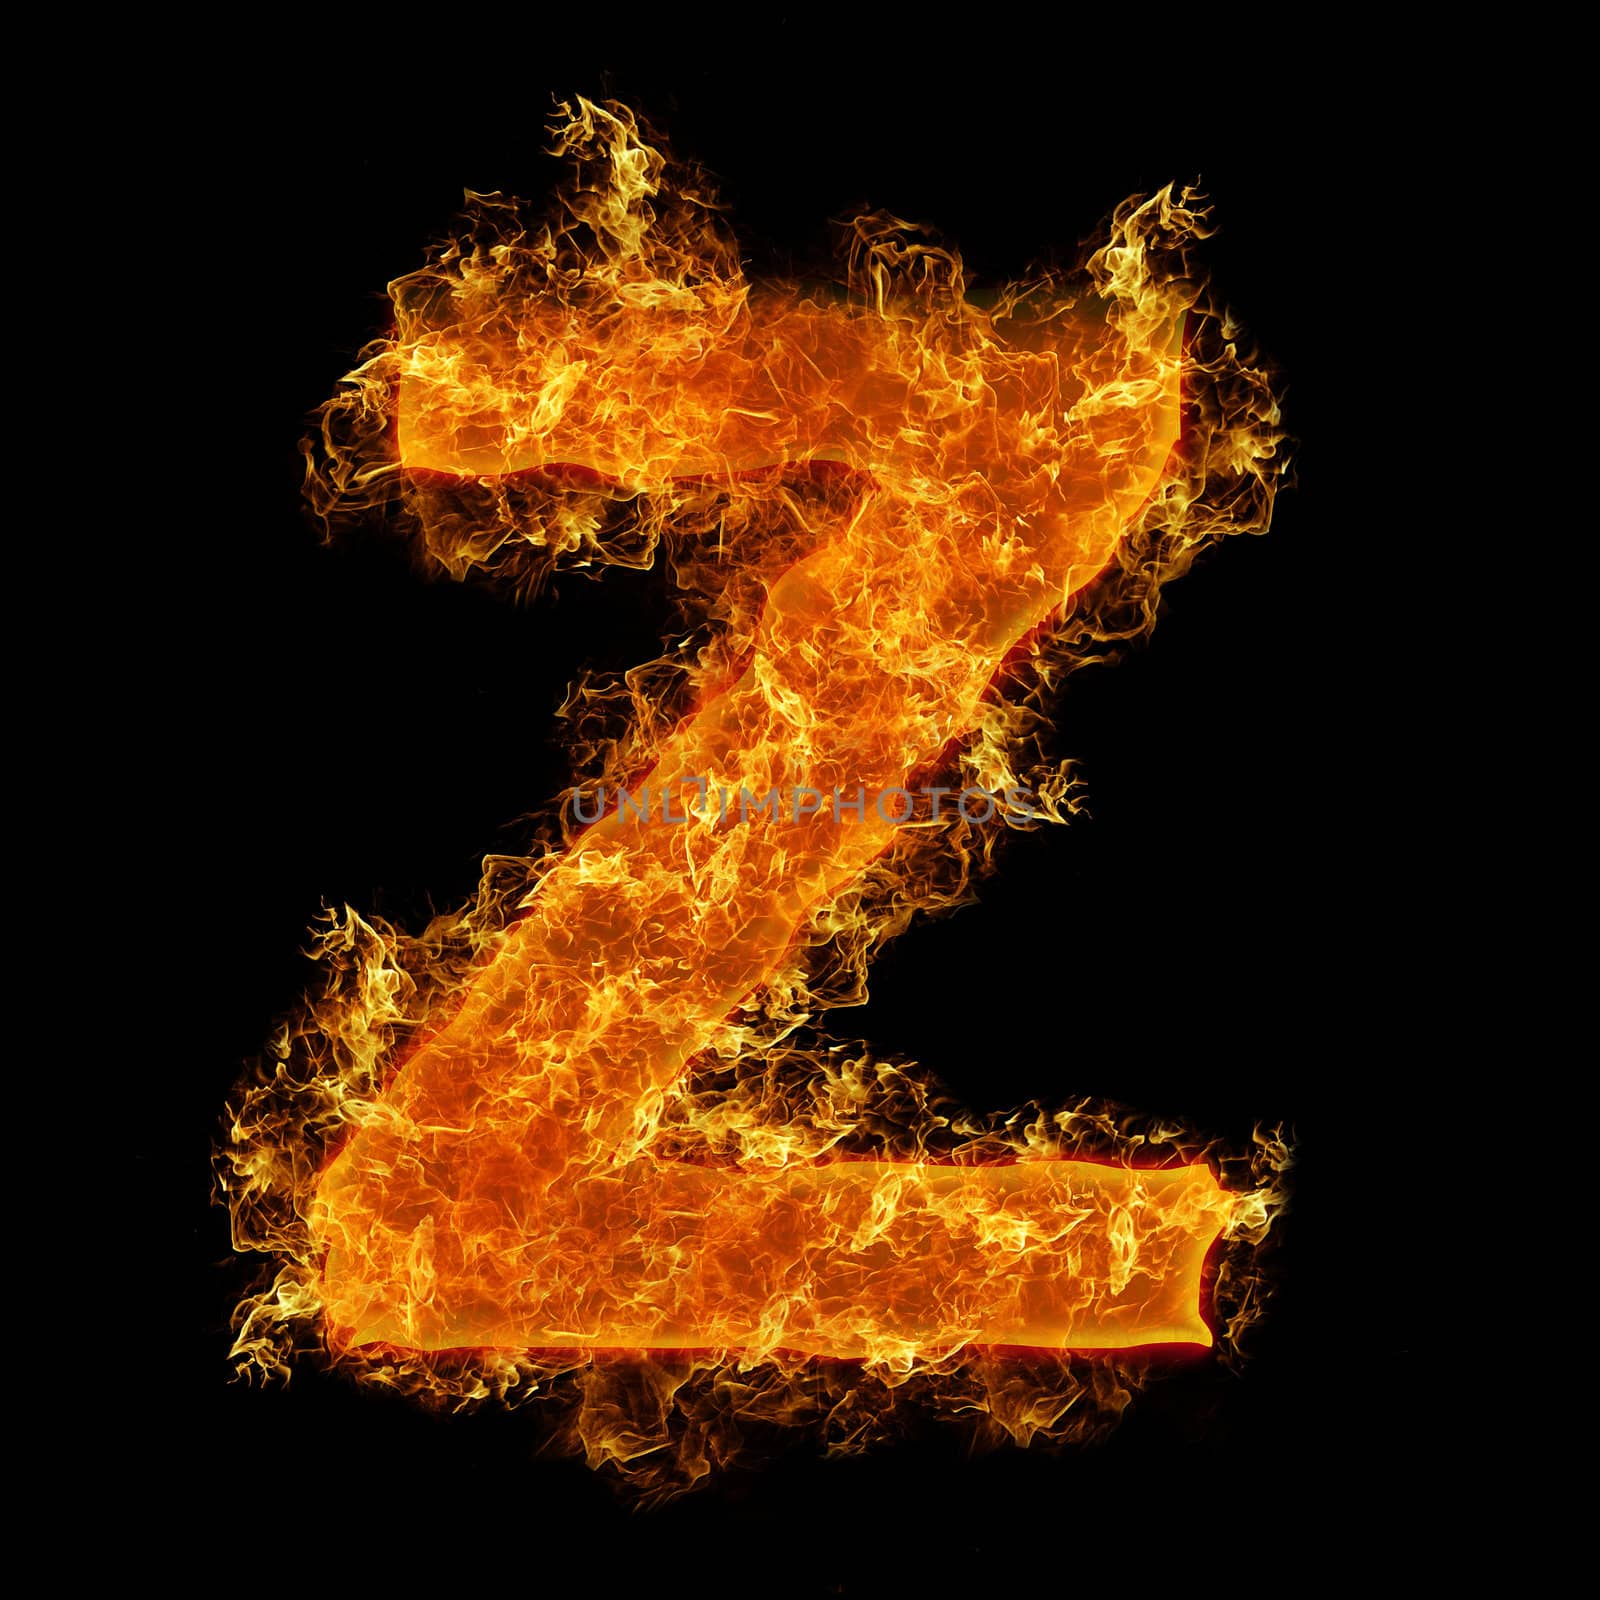 Fire letter Z by rusak